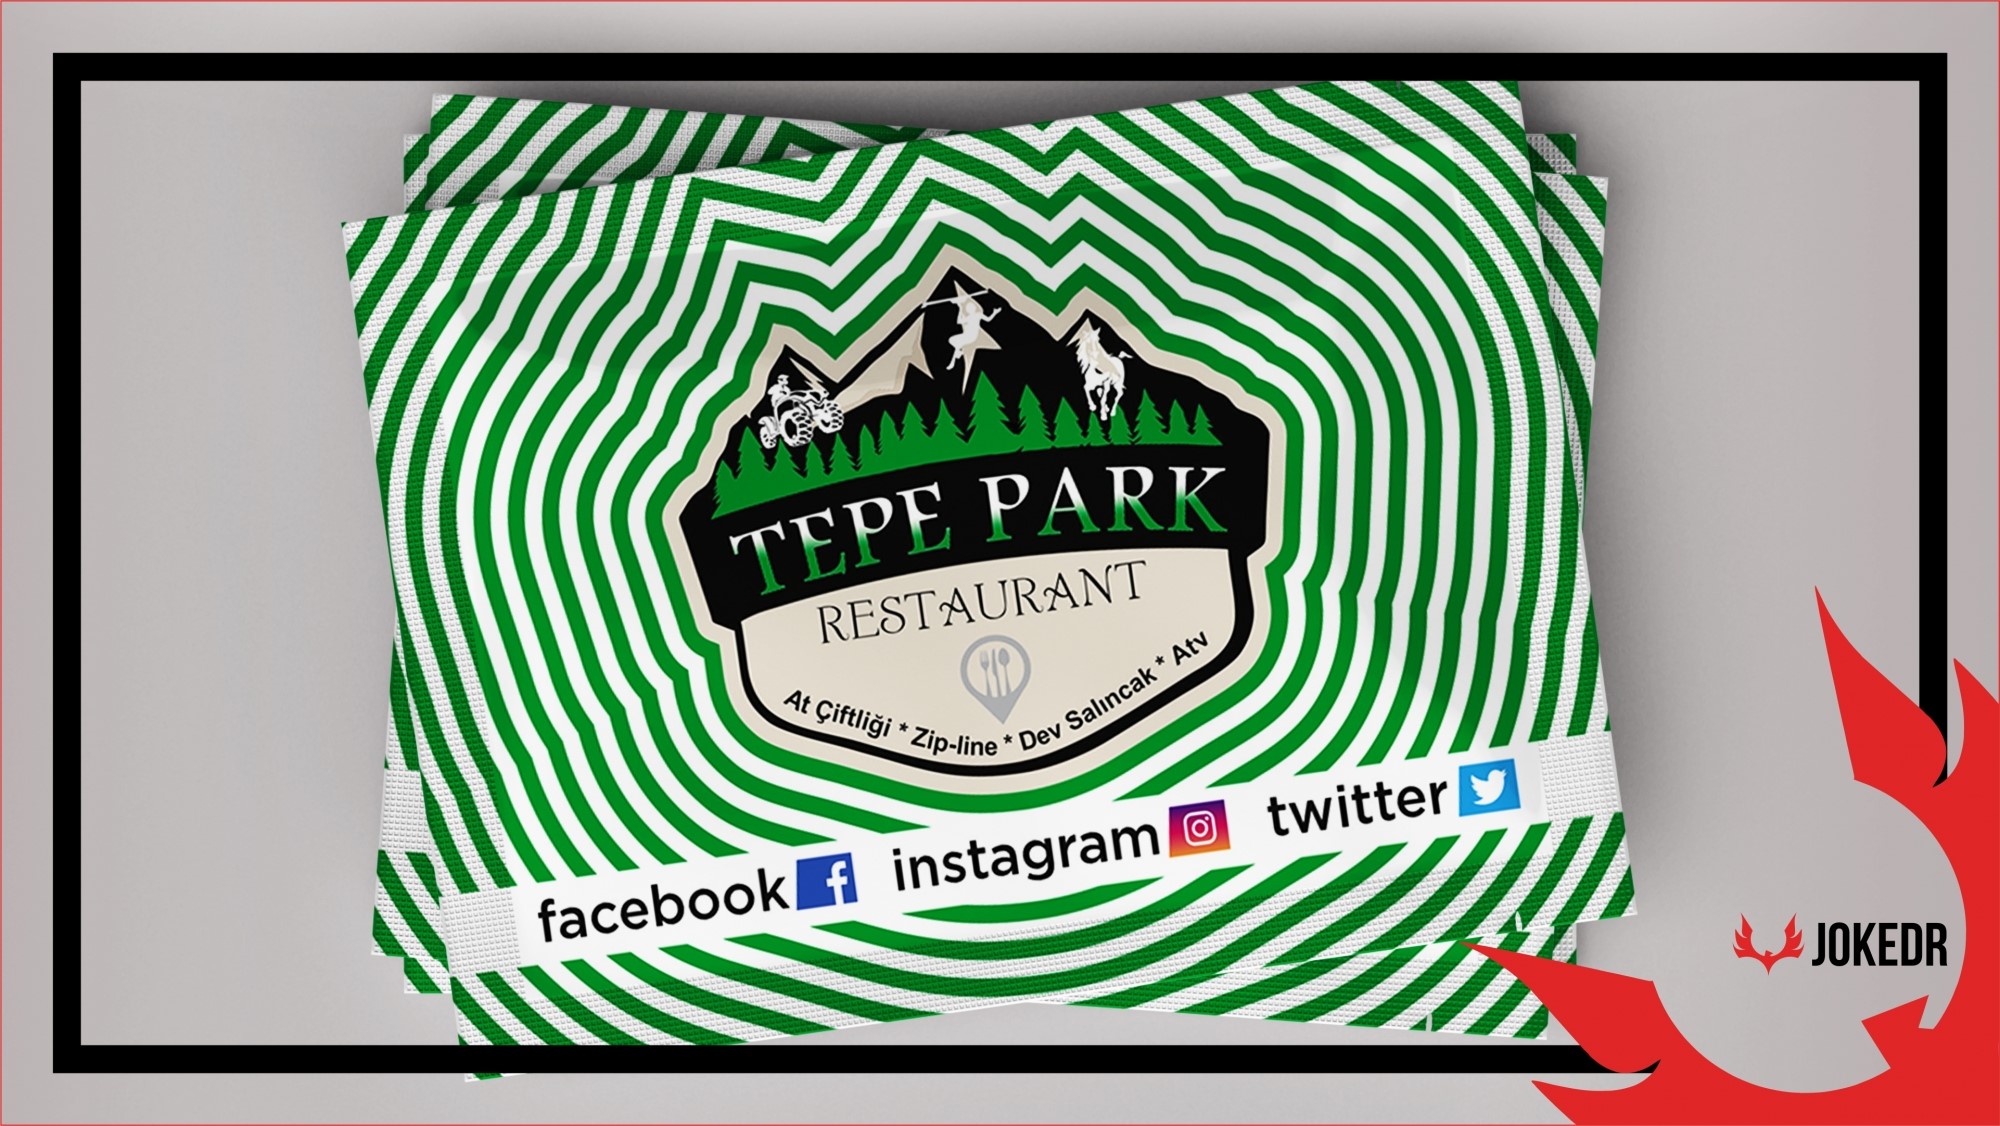 Tepe Park